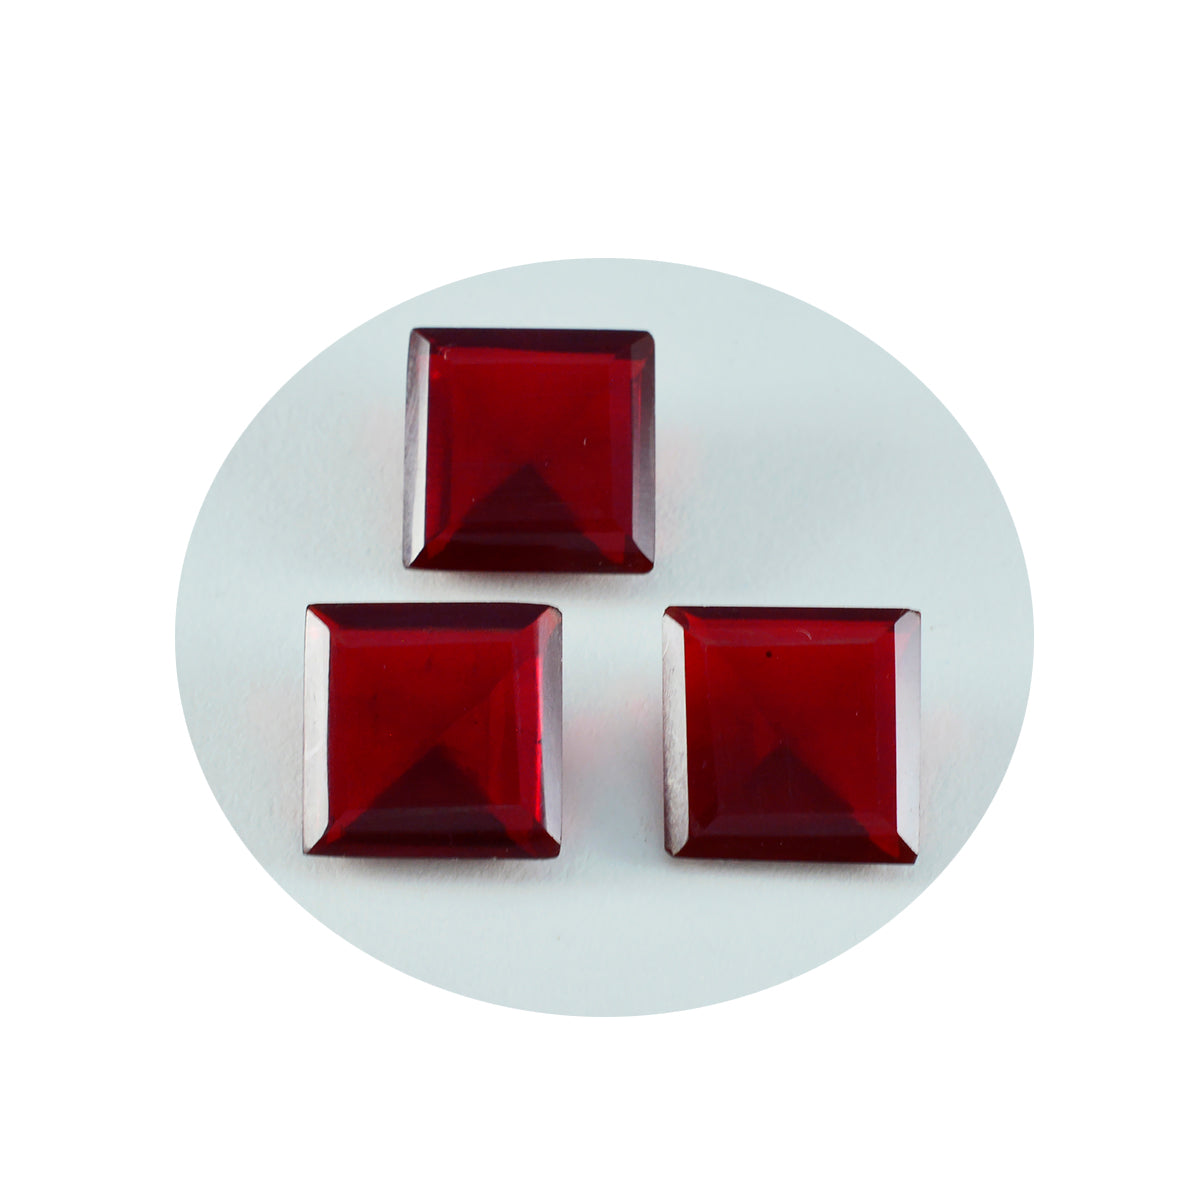 Riyogems 1 pc rubis rouge cz facettes 14x14 mm forme carrée pierres précieuses de qualité incroyable